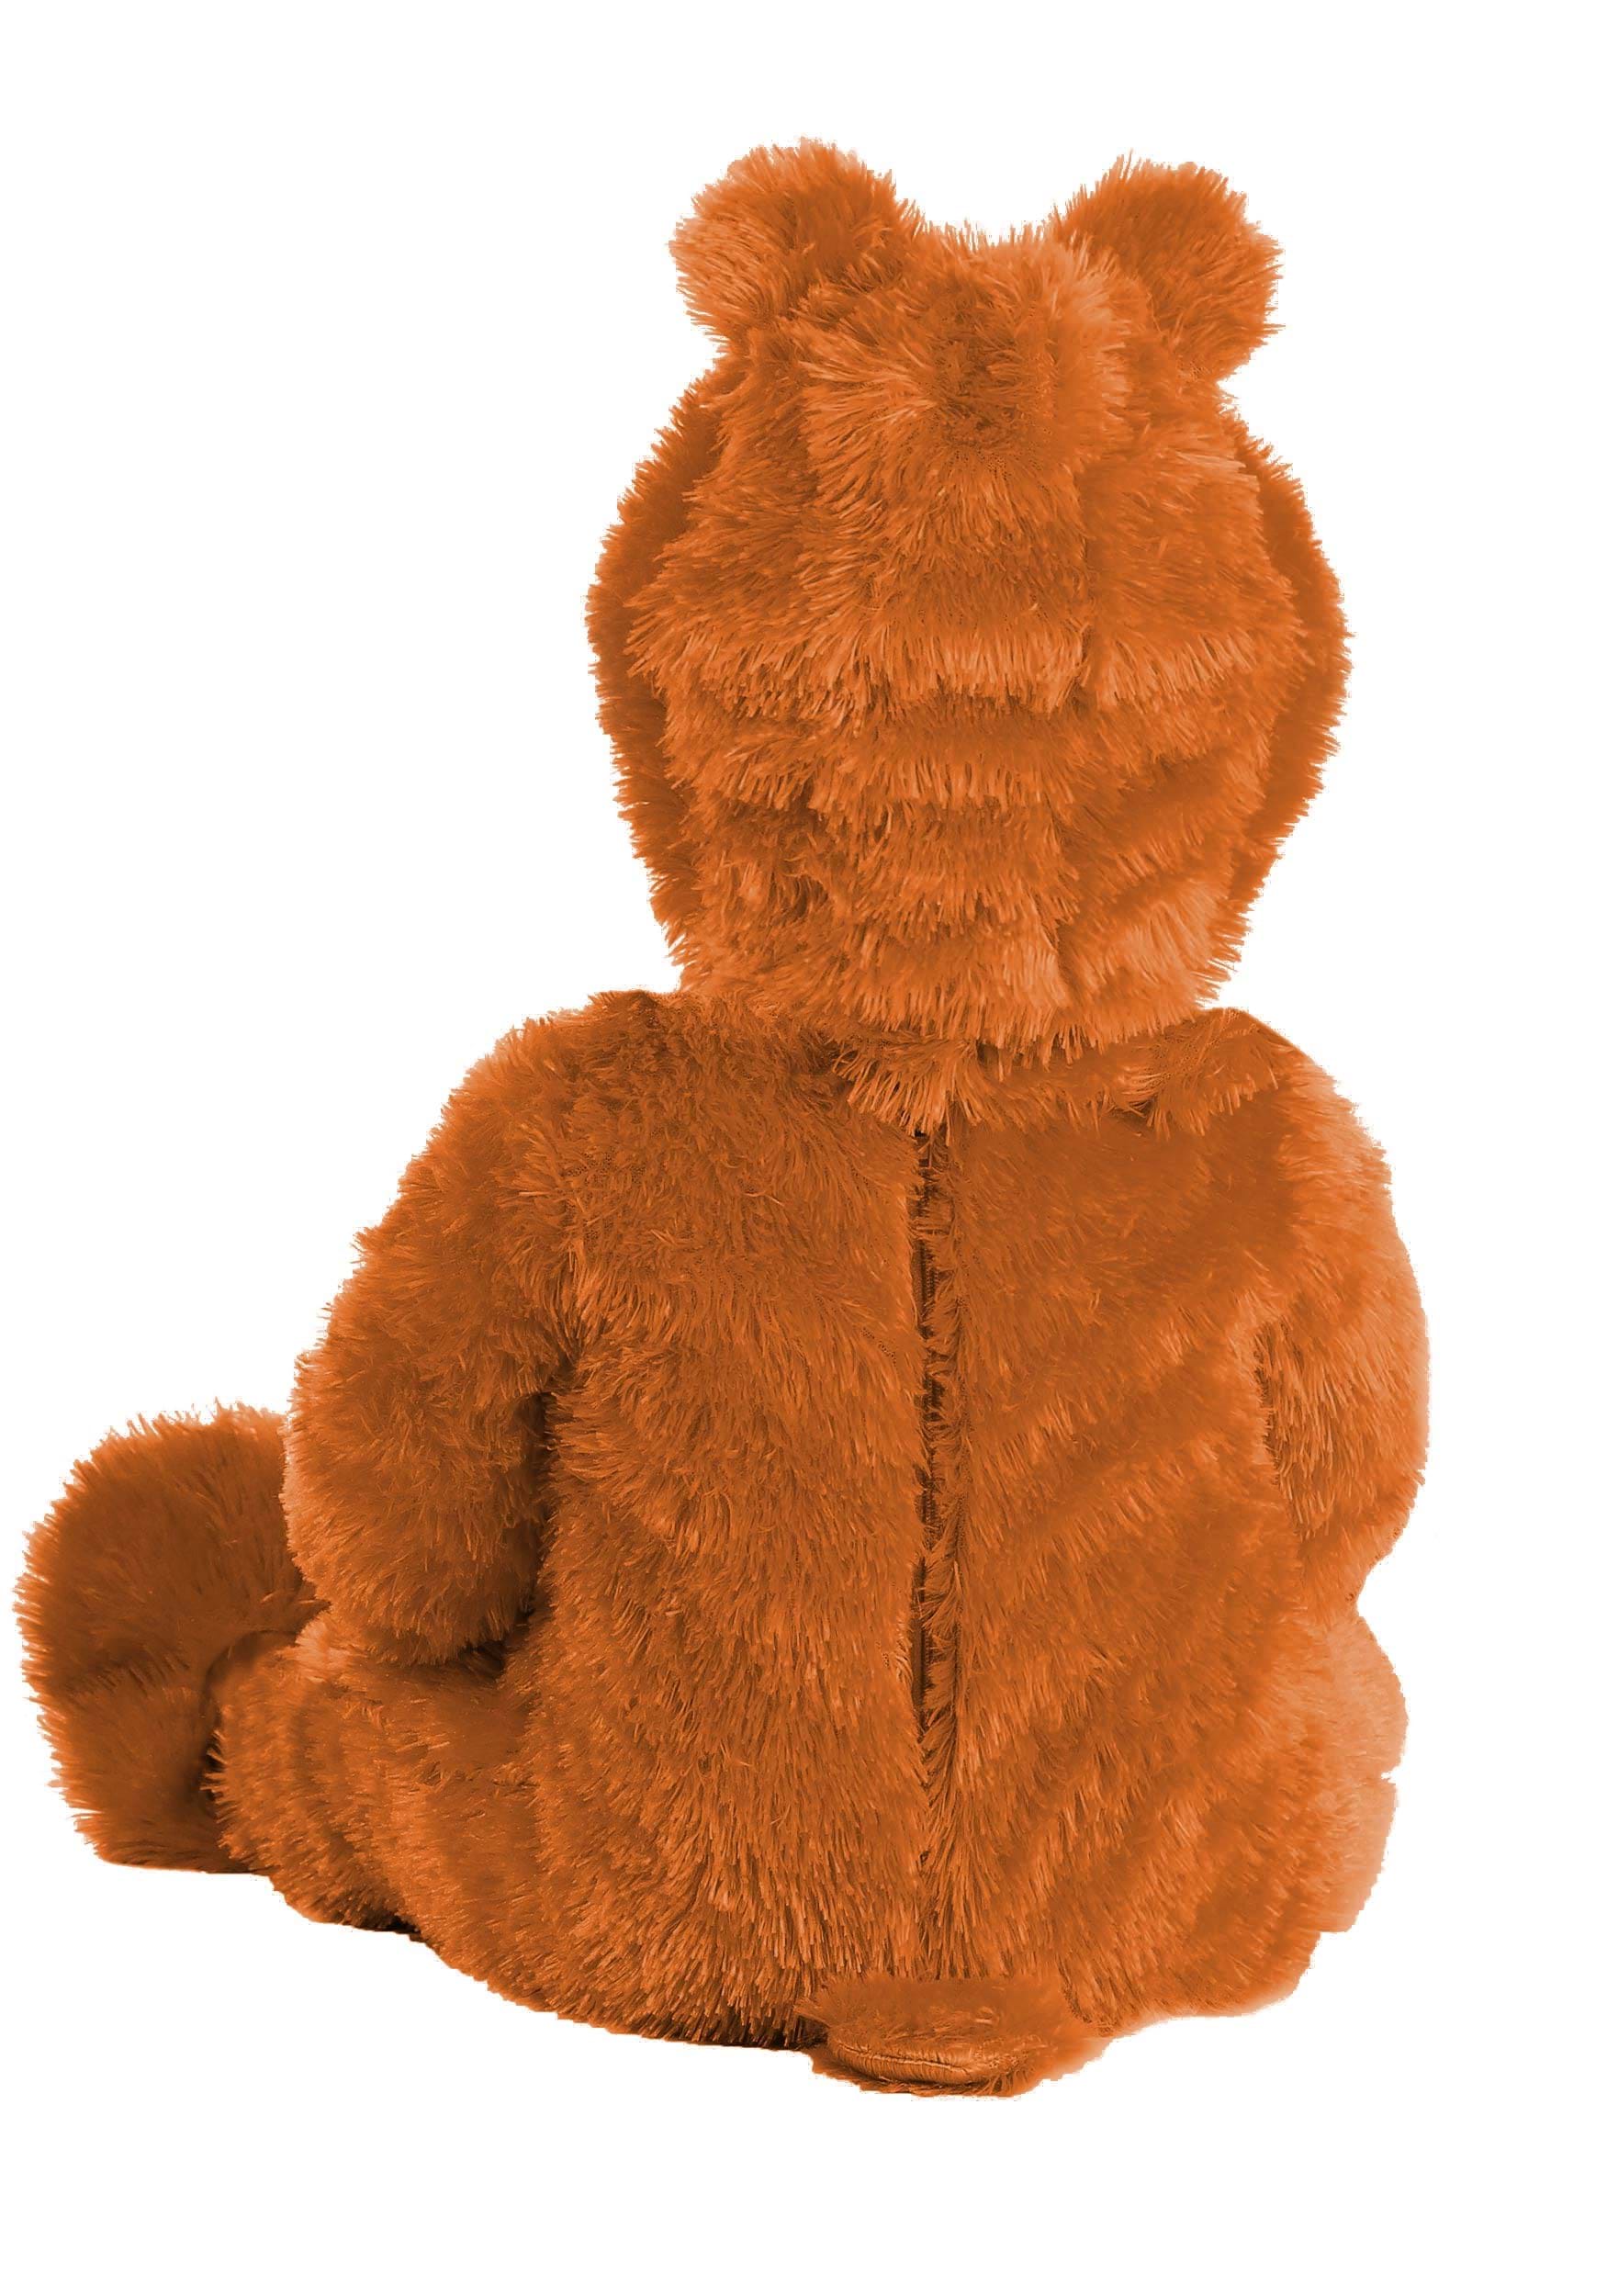 Care Bears Tenderheart Bear Infant Costume